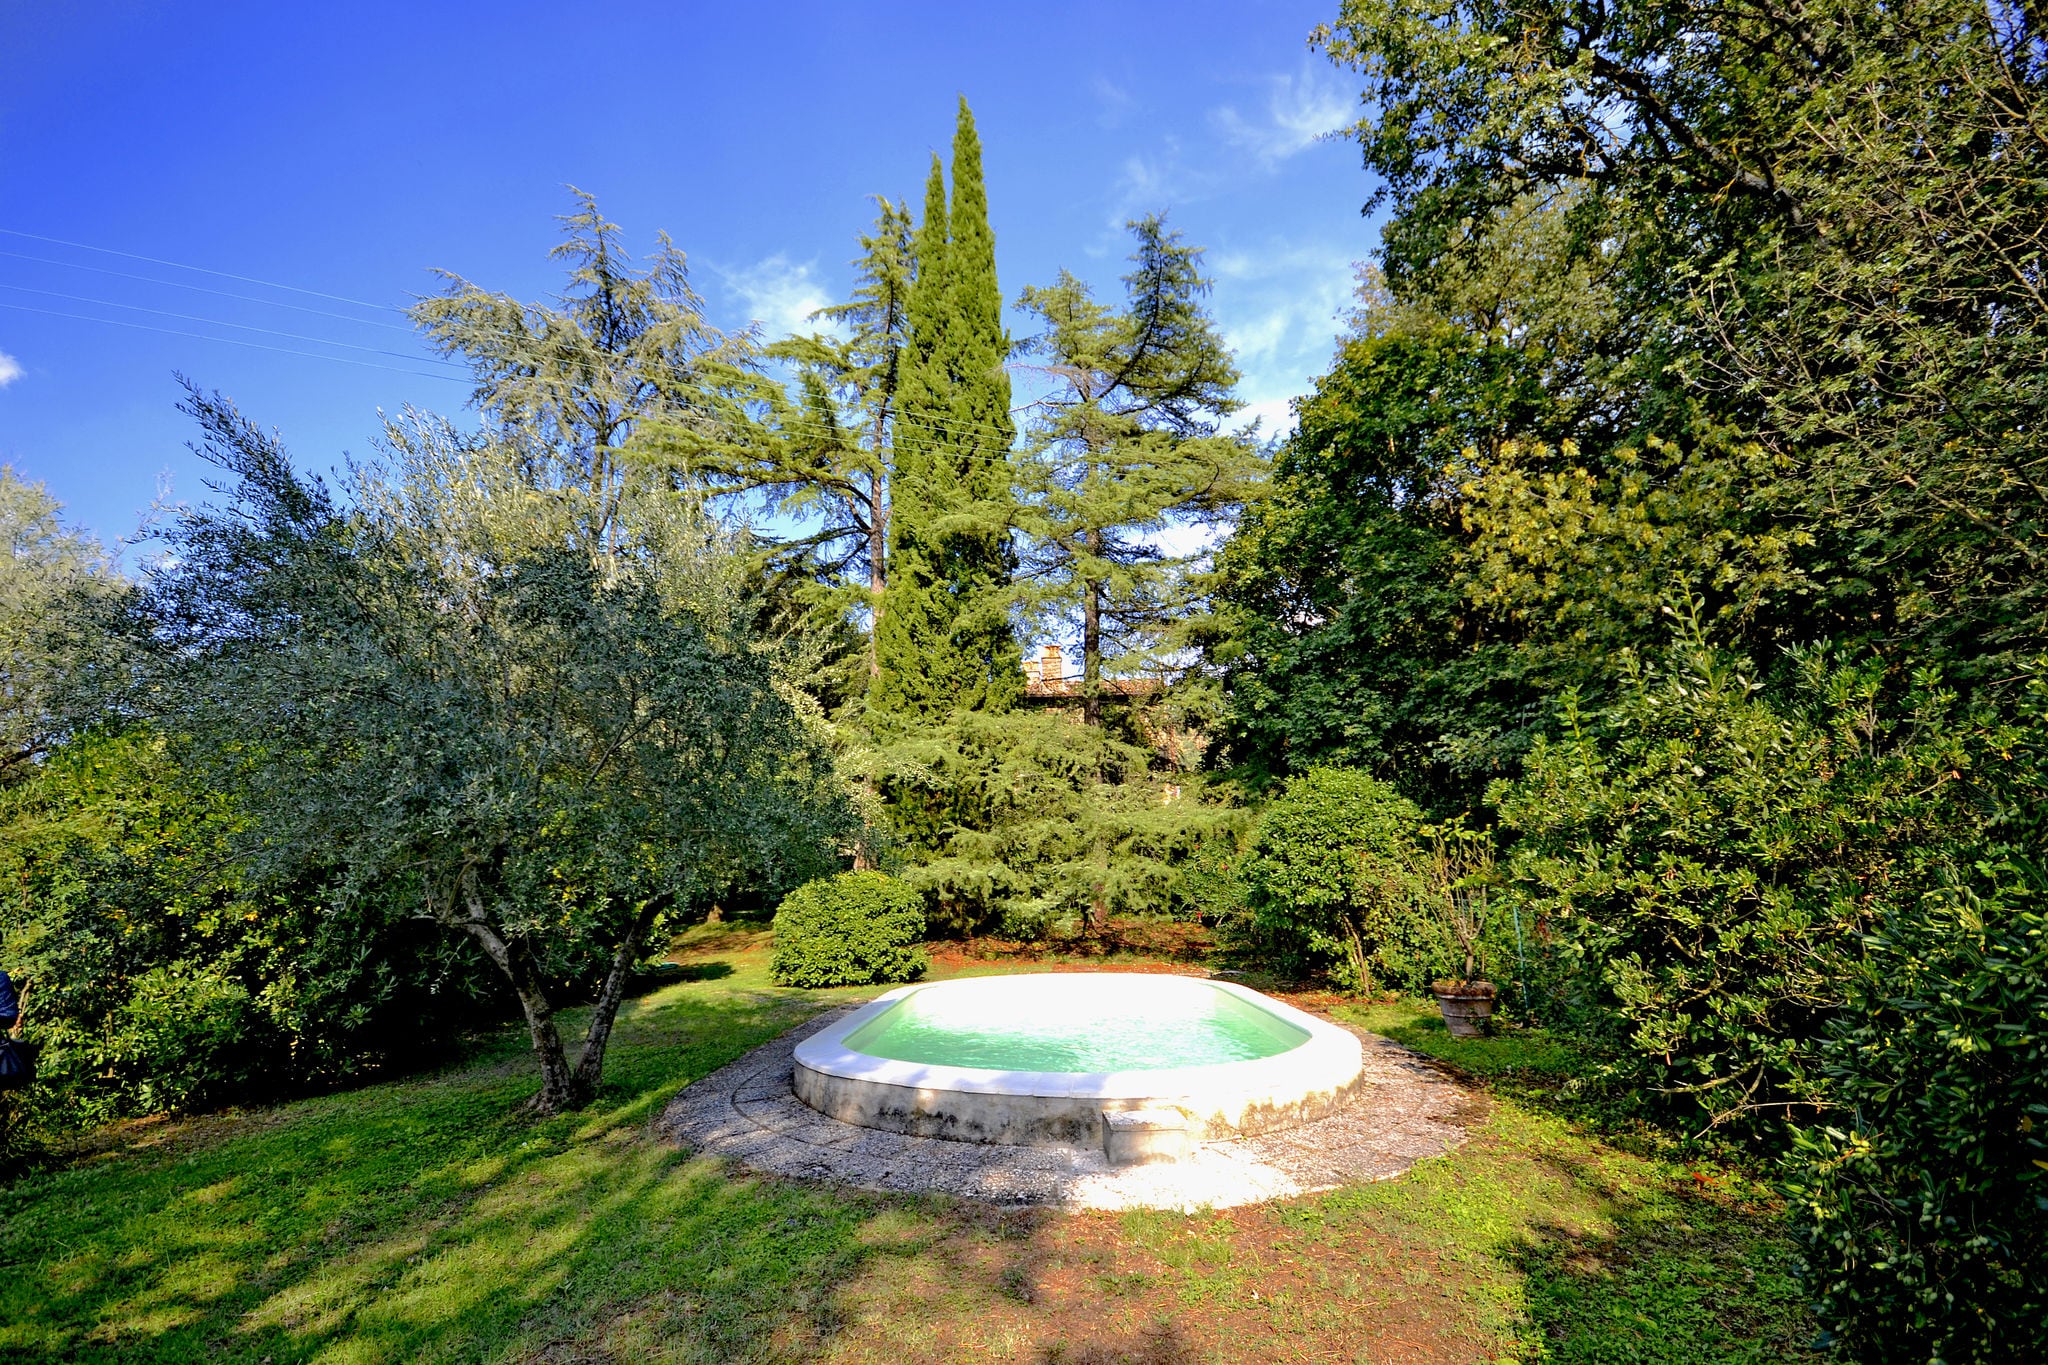 Villa in de heuvels met privézwembad dichtbij Cortona